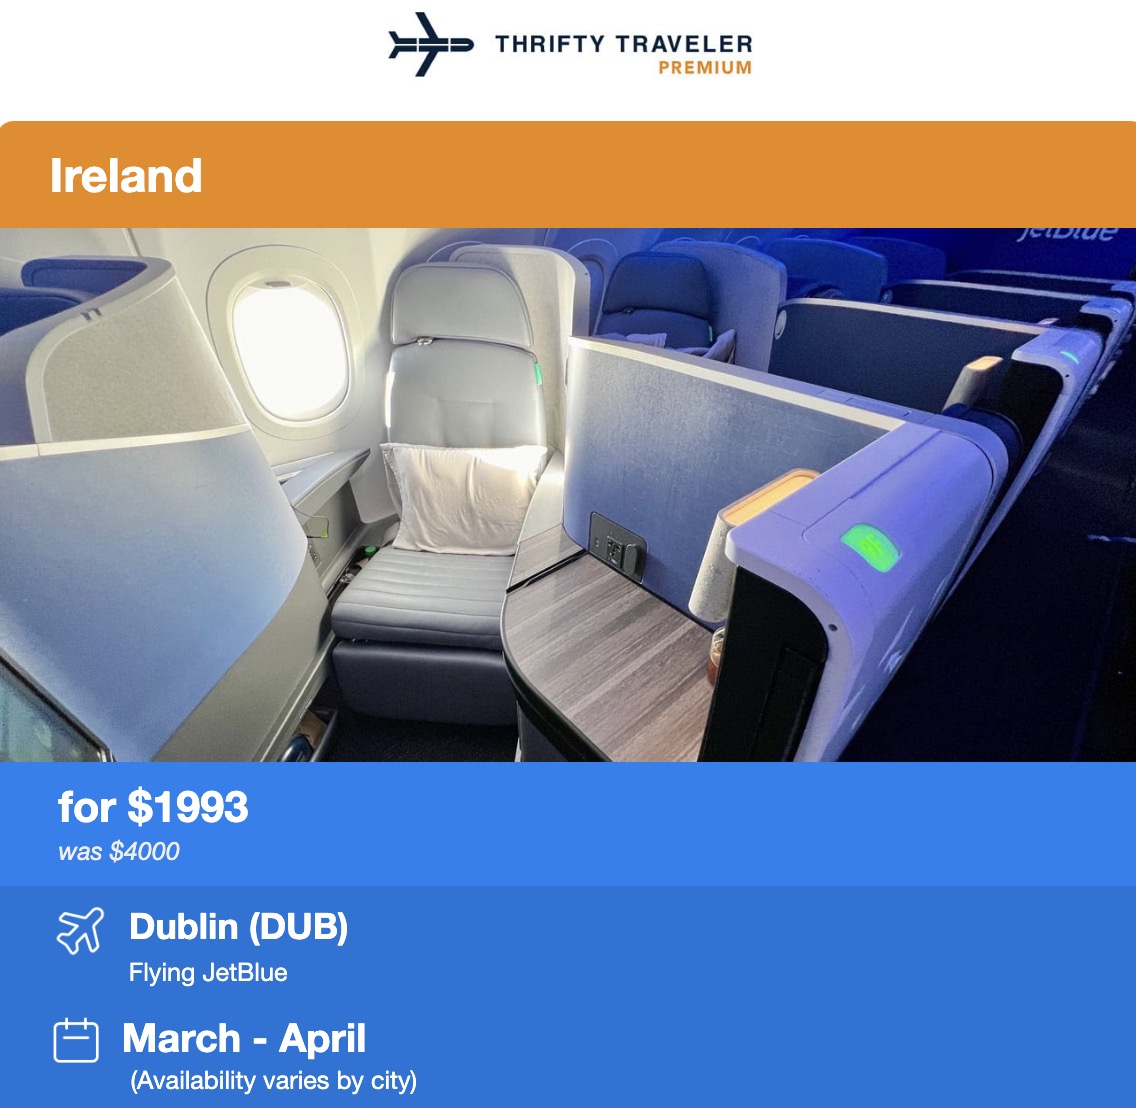 Dublin business class flight